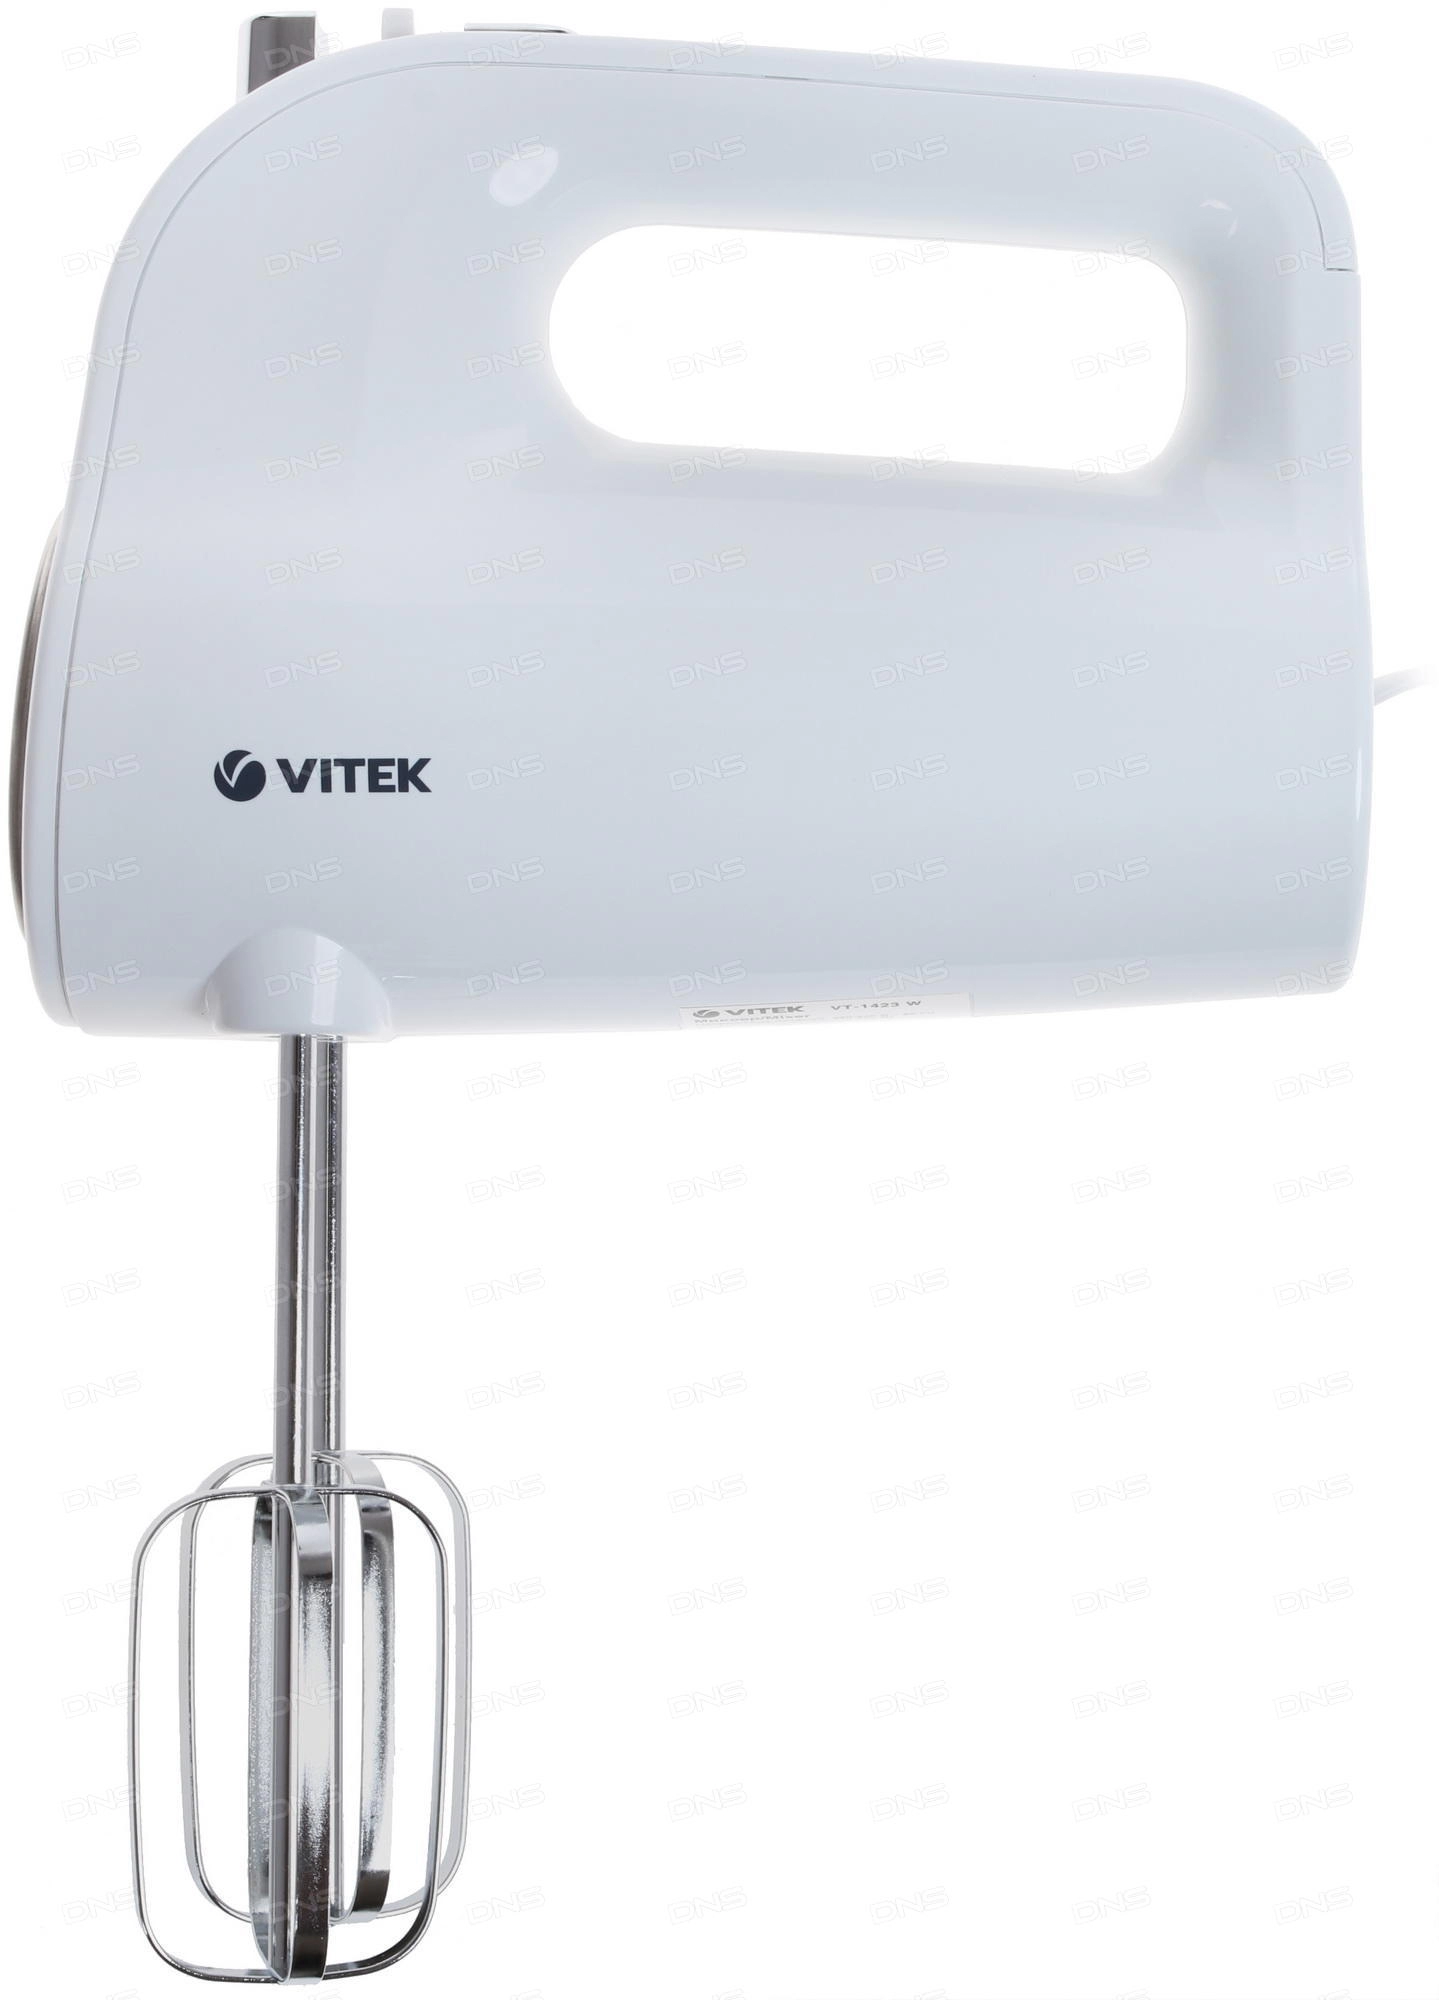 Mixer Vitek VT-1423, 600 W, 5 trepte viteza, Alb